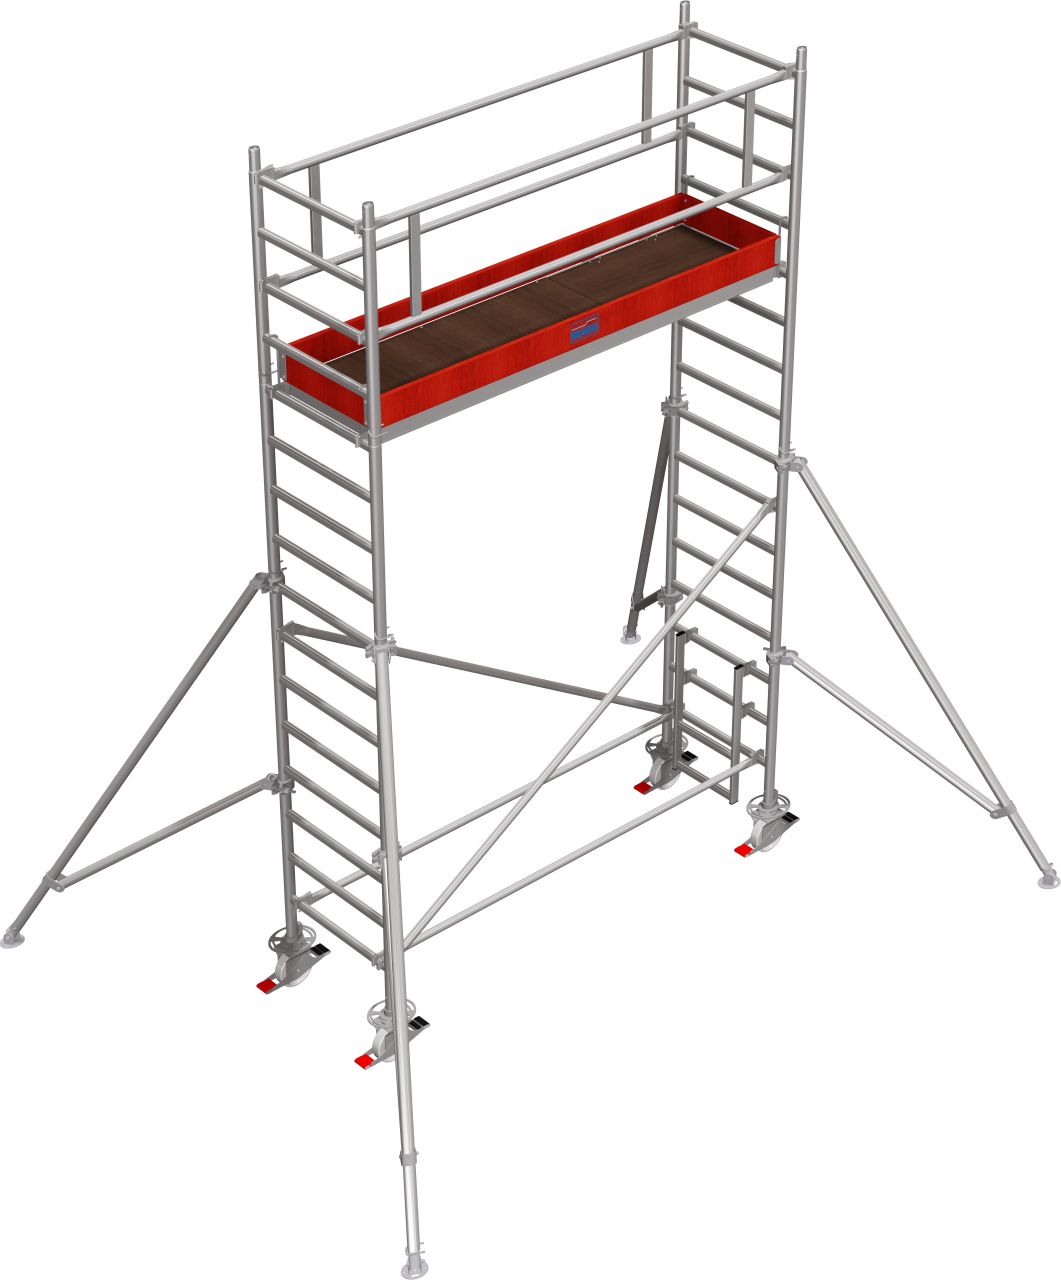 Дополнительное изображение Stabilo серии 1000 рабочая высота 5,2 м, размер площадки (2.5x0.75 м)